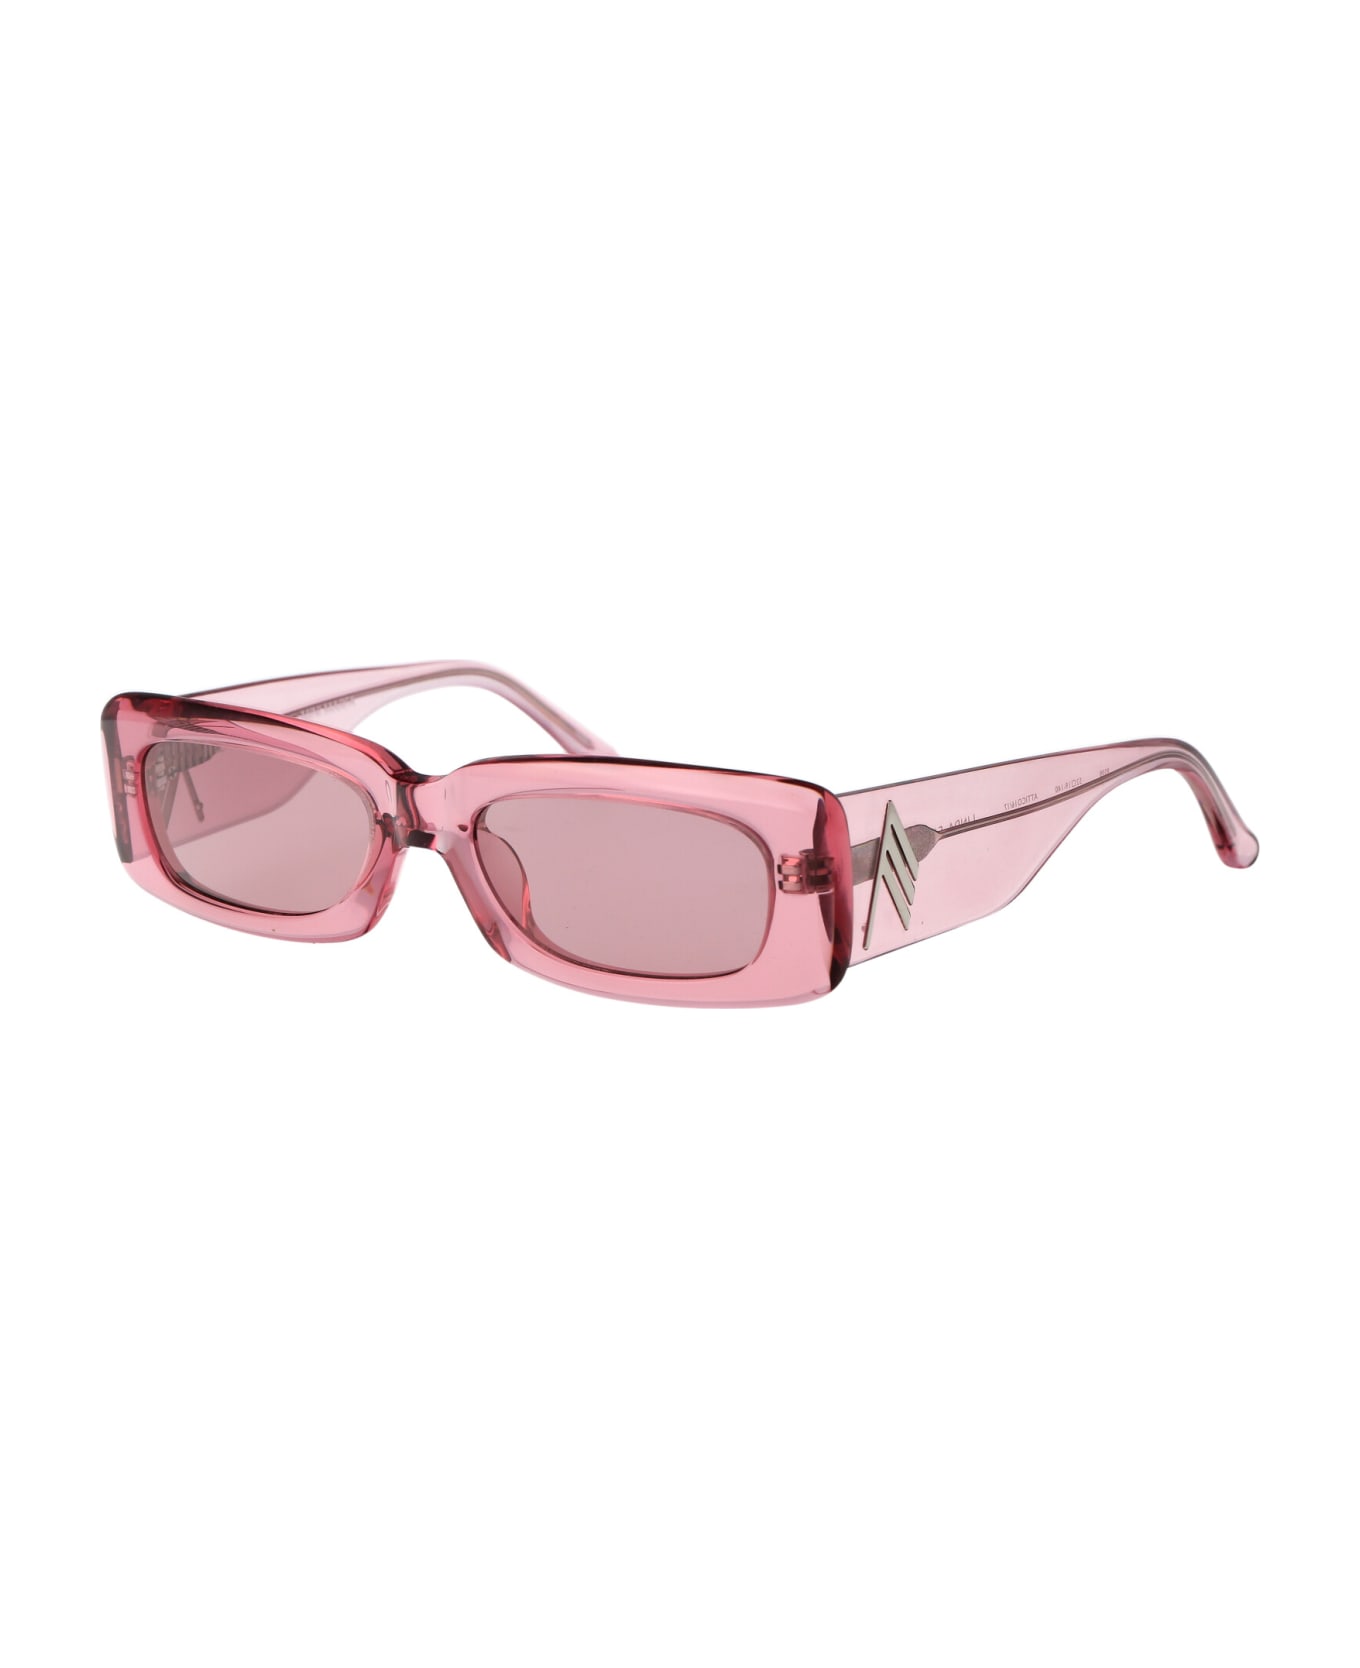 The Attico Mini Marfa Sunglasses - POWDERPINK/SILVER/PINK